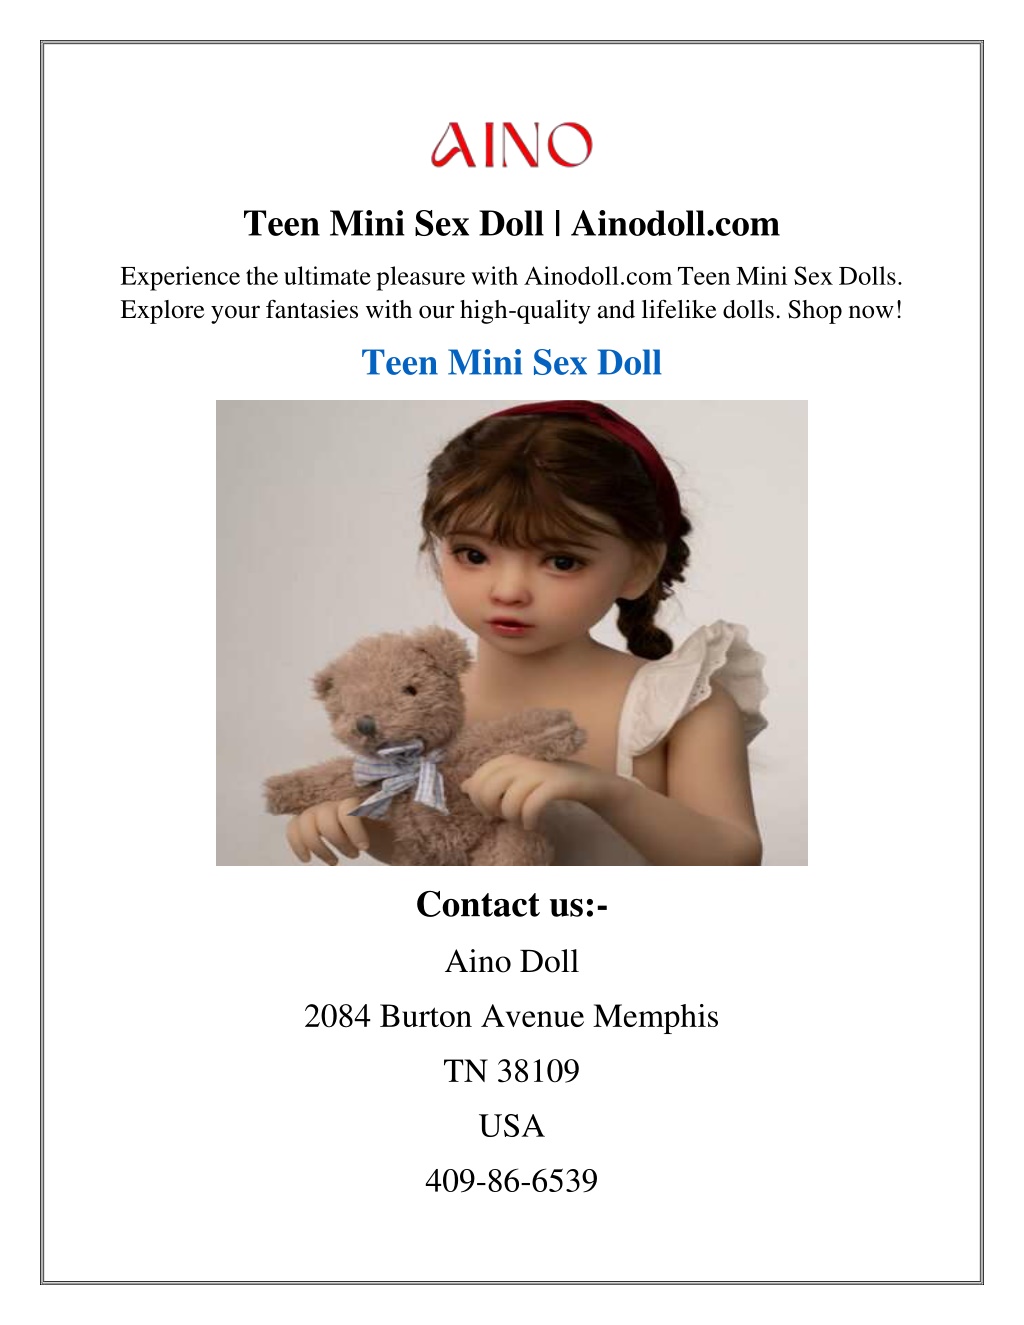 teen mini sex doll ainodoll com l.w